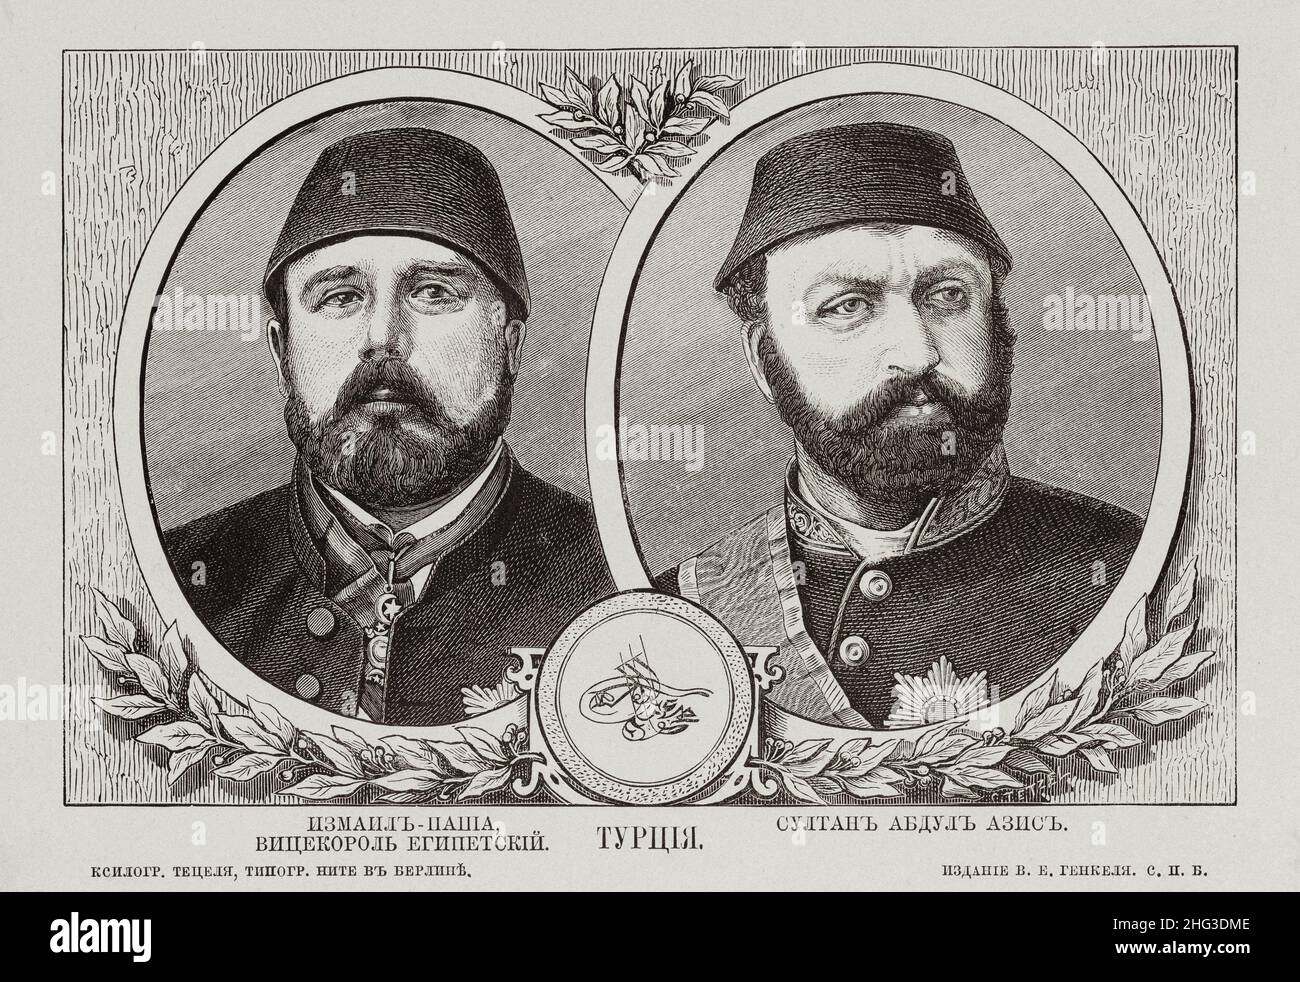 Incisione russa dei governanti della Turchia (Impero Ottomano) del 19th secolo. Ritratto: Viceré d’Egitto Isma’il Pasha (a sinistra) e Sultano ottomano Abd Foto Stock